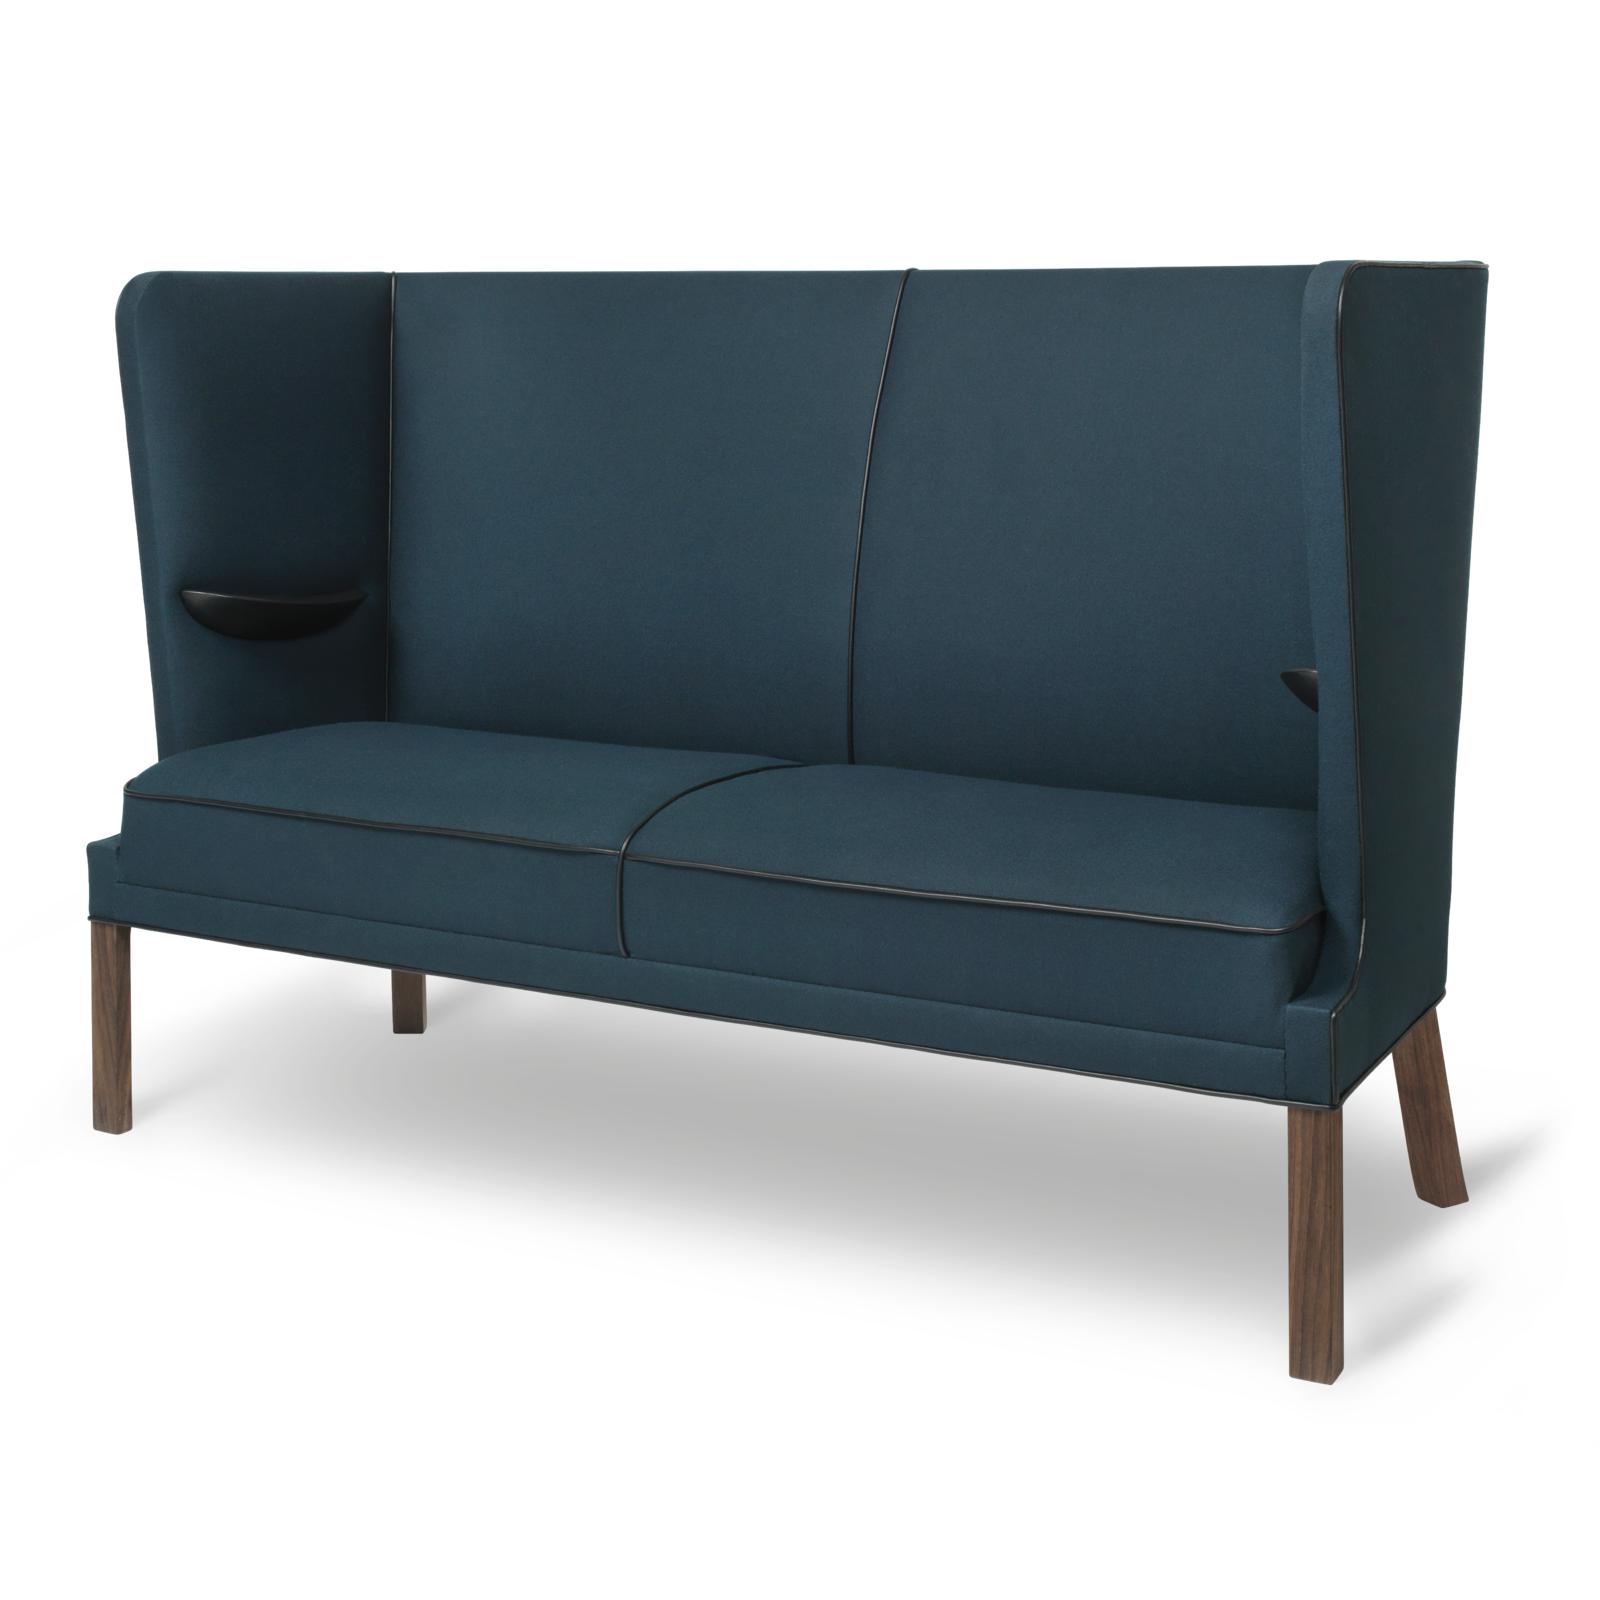 Carl Hansen Fh436 Coupé Sofa, Oiled Walnut/Blue Fabric